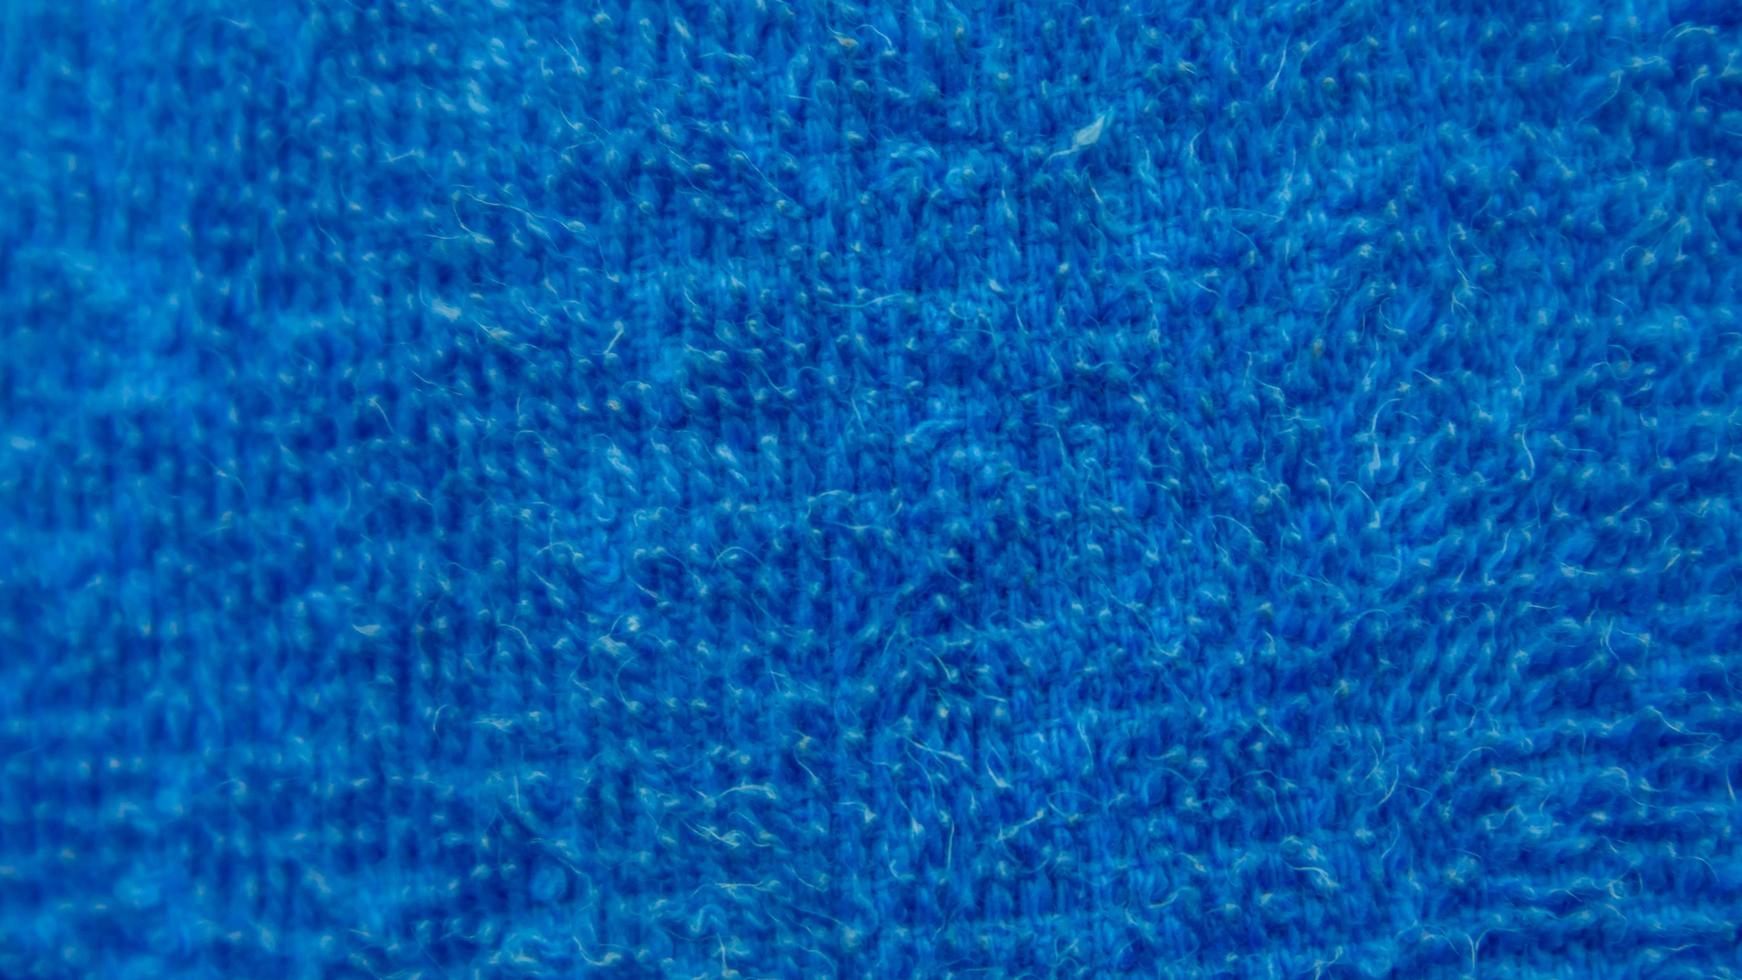 texture de serviette bleue en arrière-plan photo